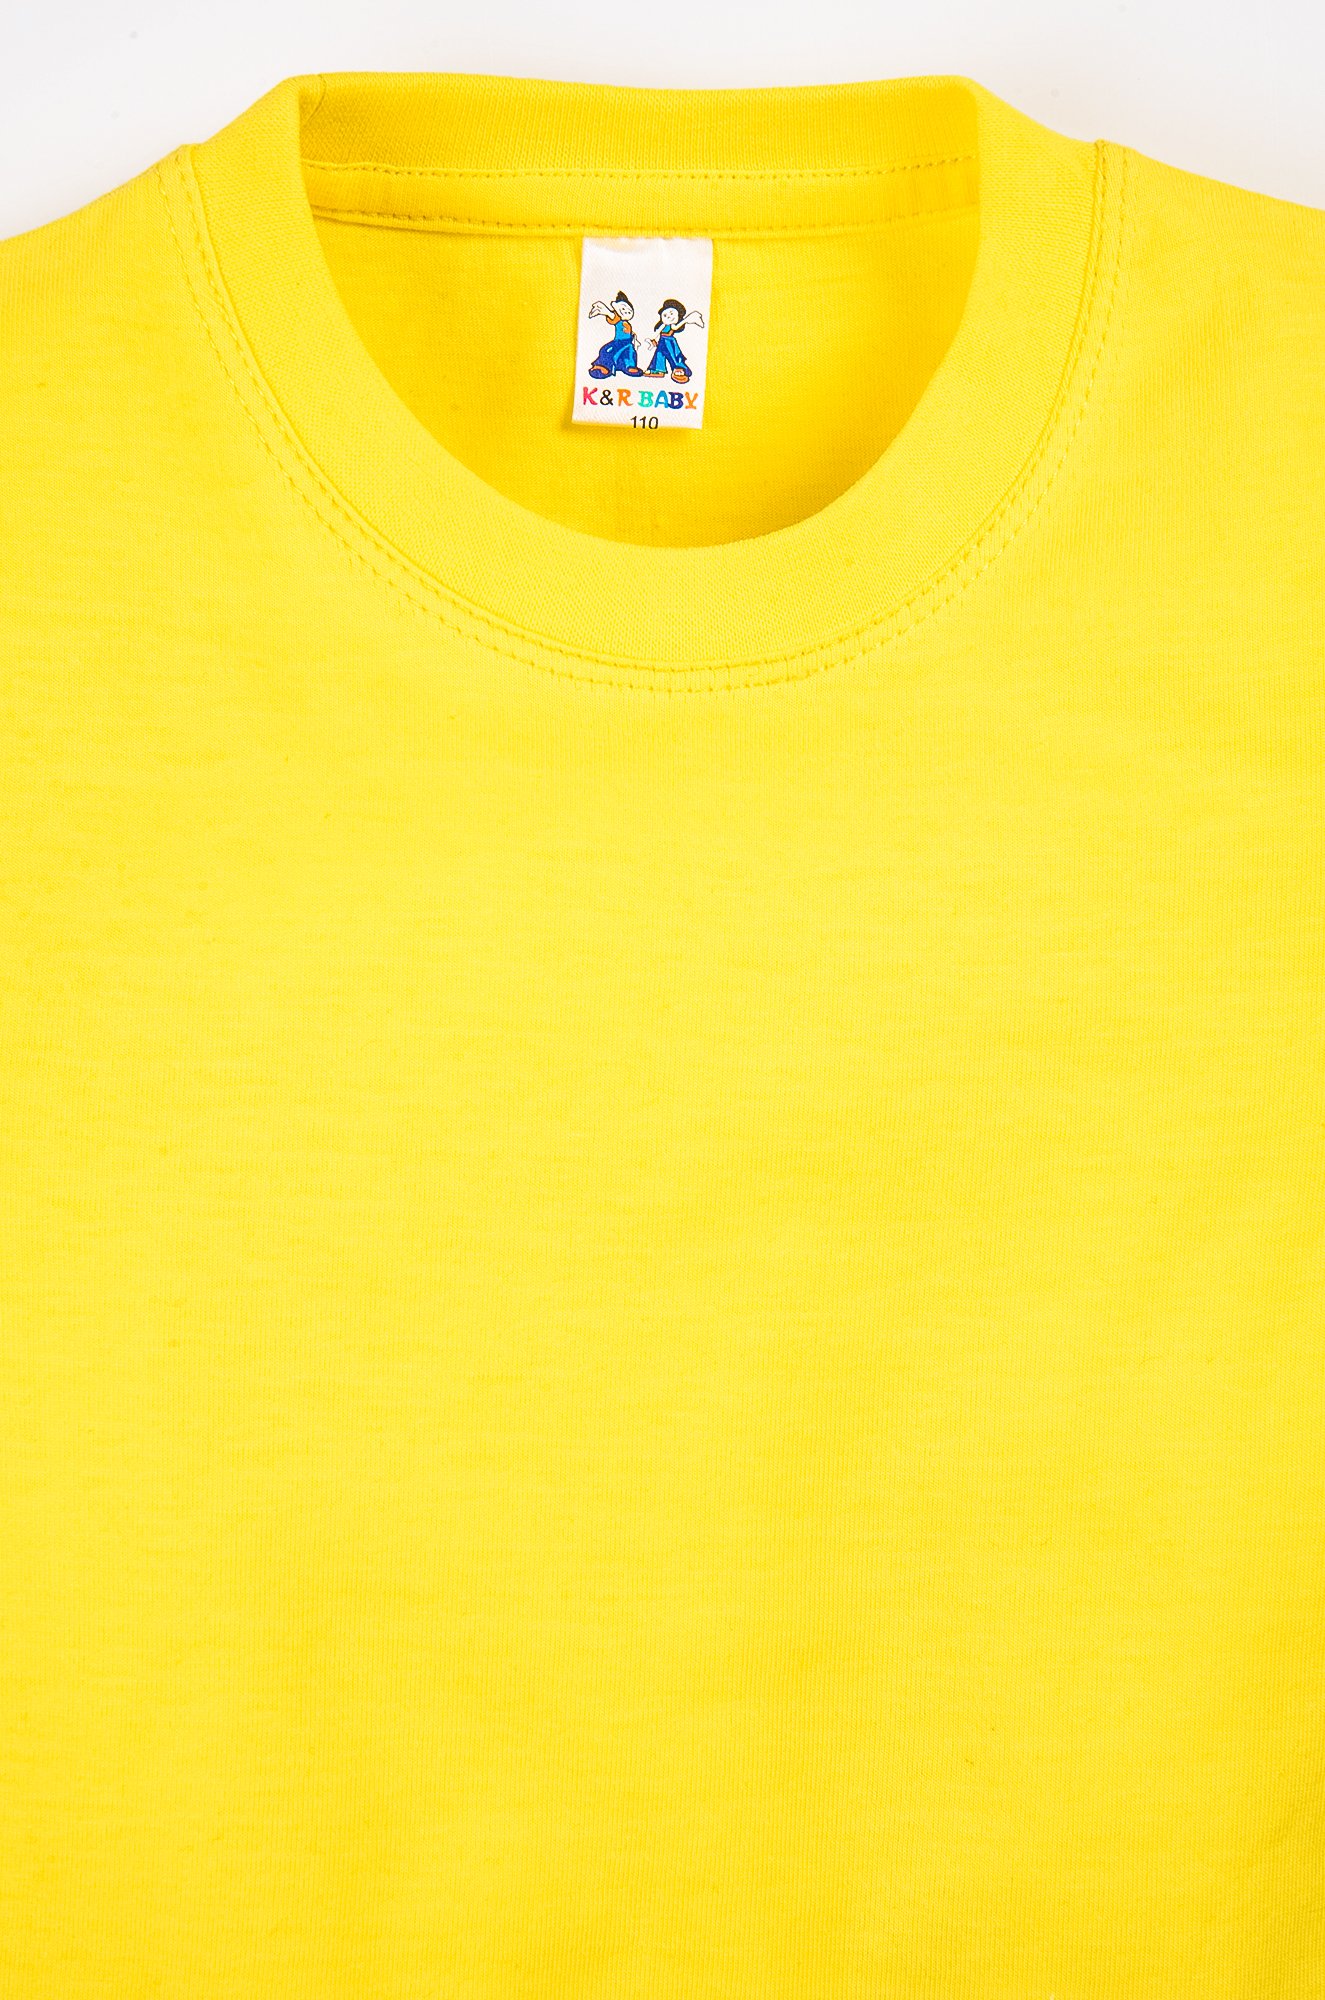 Купить жёлтую футболку детскую K&R BABY оптом в интернет-магазине HappyWear.ru